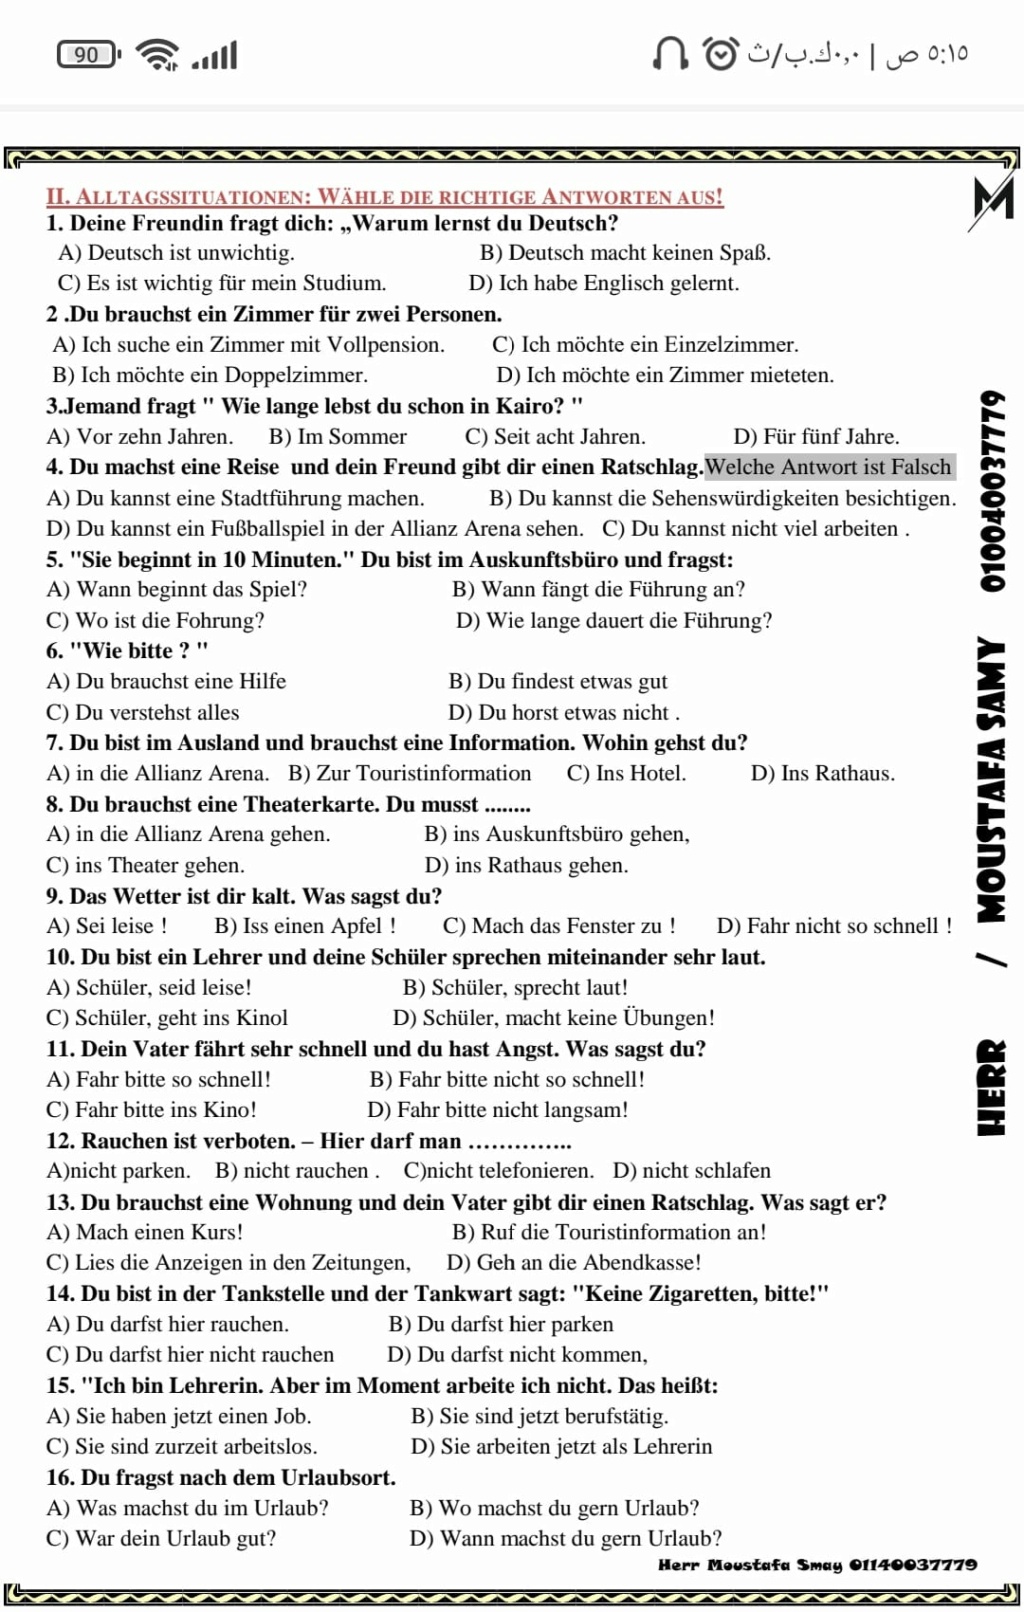 مراجعة لغة المانية الصف الثانى الثانوى سؤال القطعة و الرد علي الاميل والموا 872